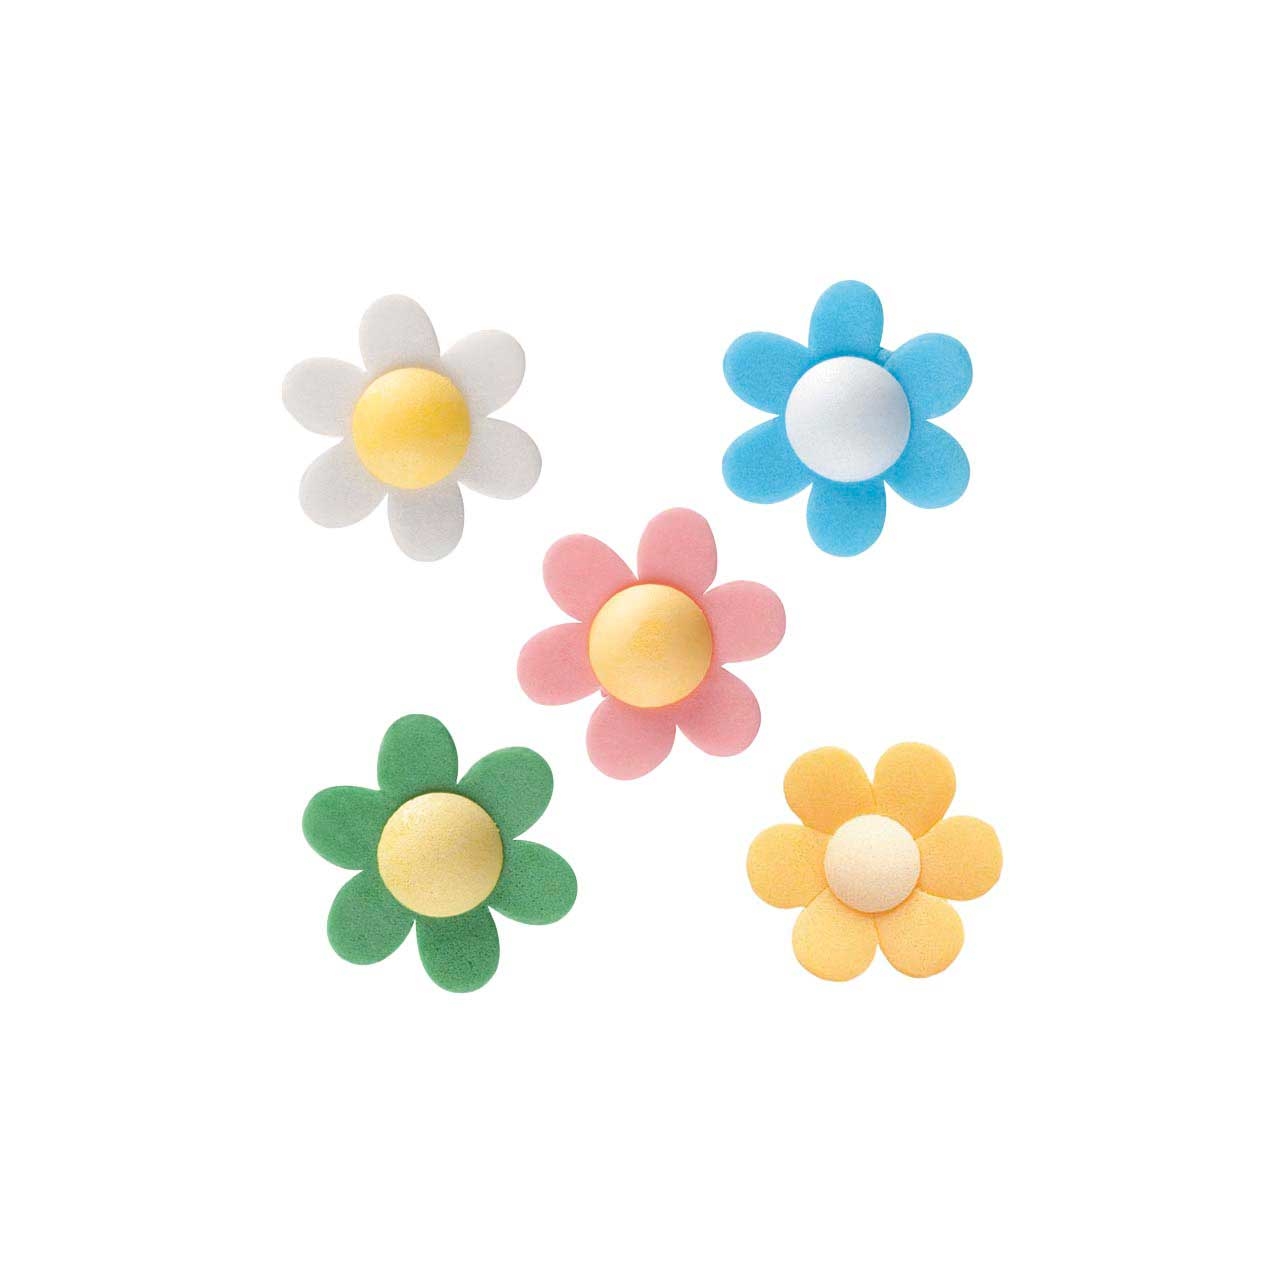 120 x Anemone Blumen - gemischte Farben - 4 cm (Waferdeko / Oblaten Blume) - Dekora